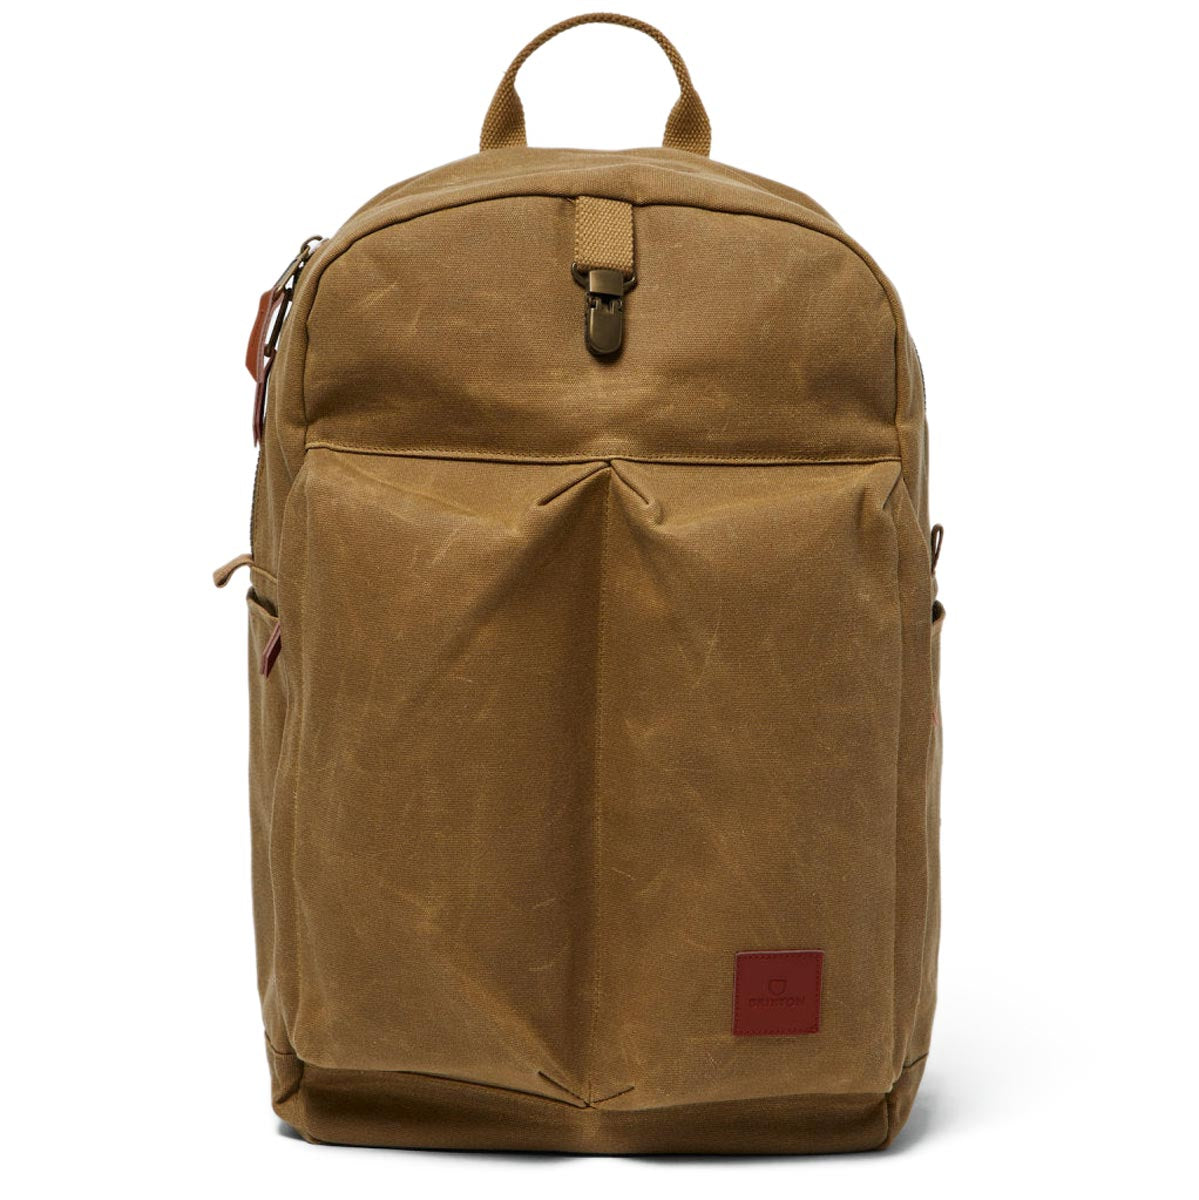 Brixton Traveler Backpack - Olive Brown image 1